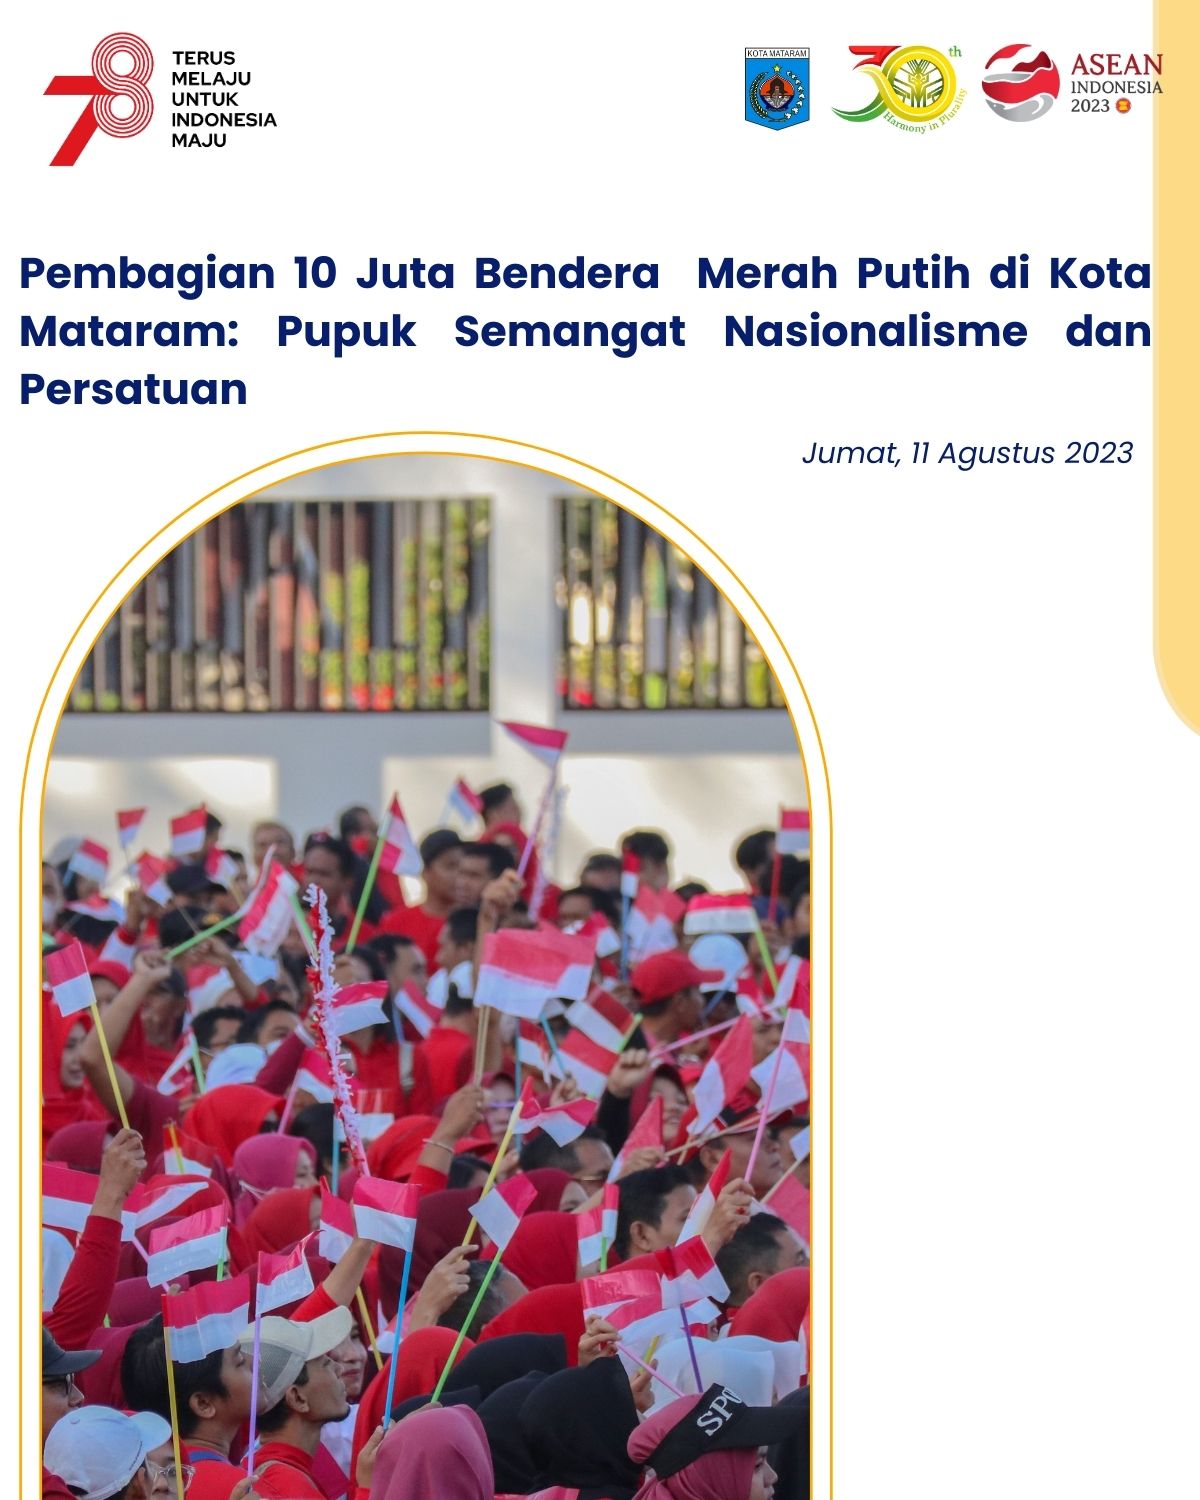 Pembagian 10 Juta Bendera di Kota Mataram: Pupuk Semangat Nasionalisme dan Persatuan